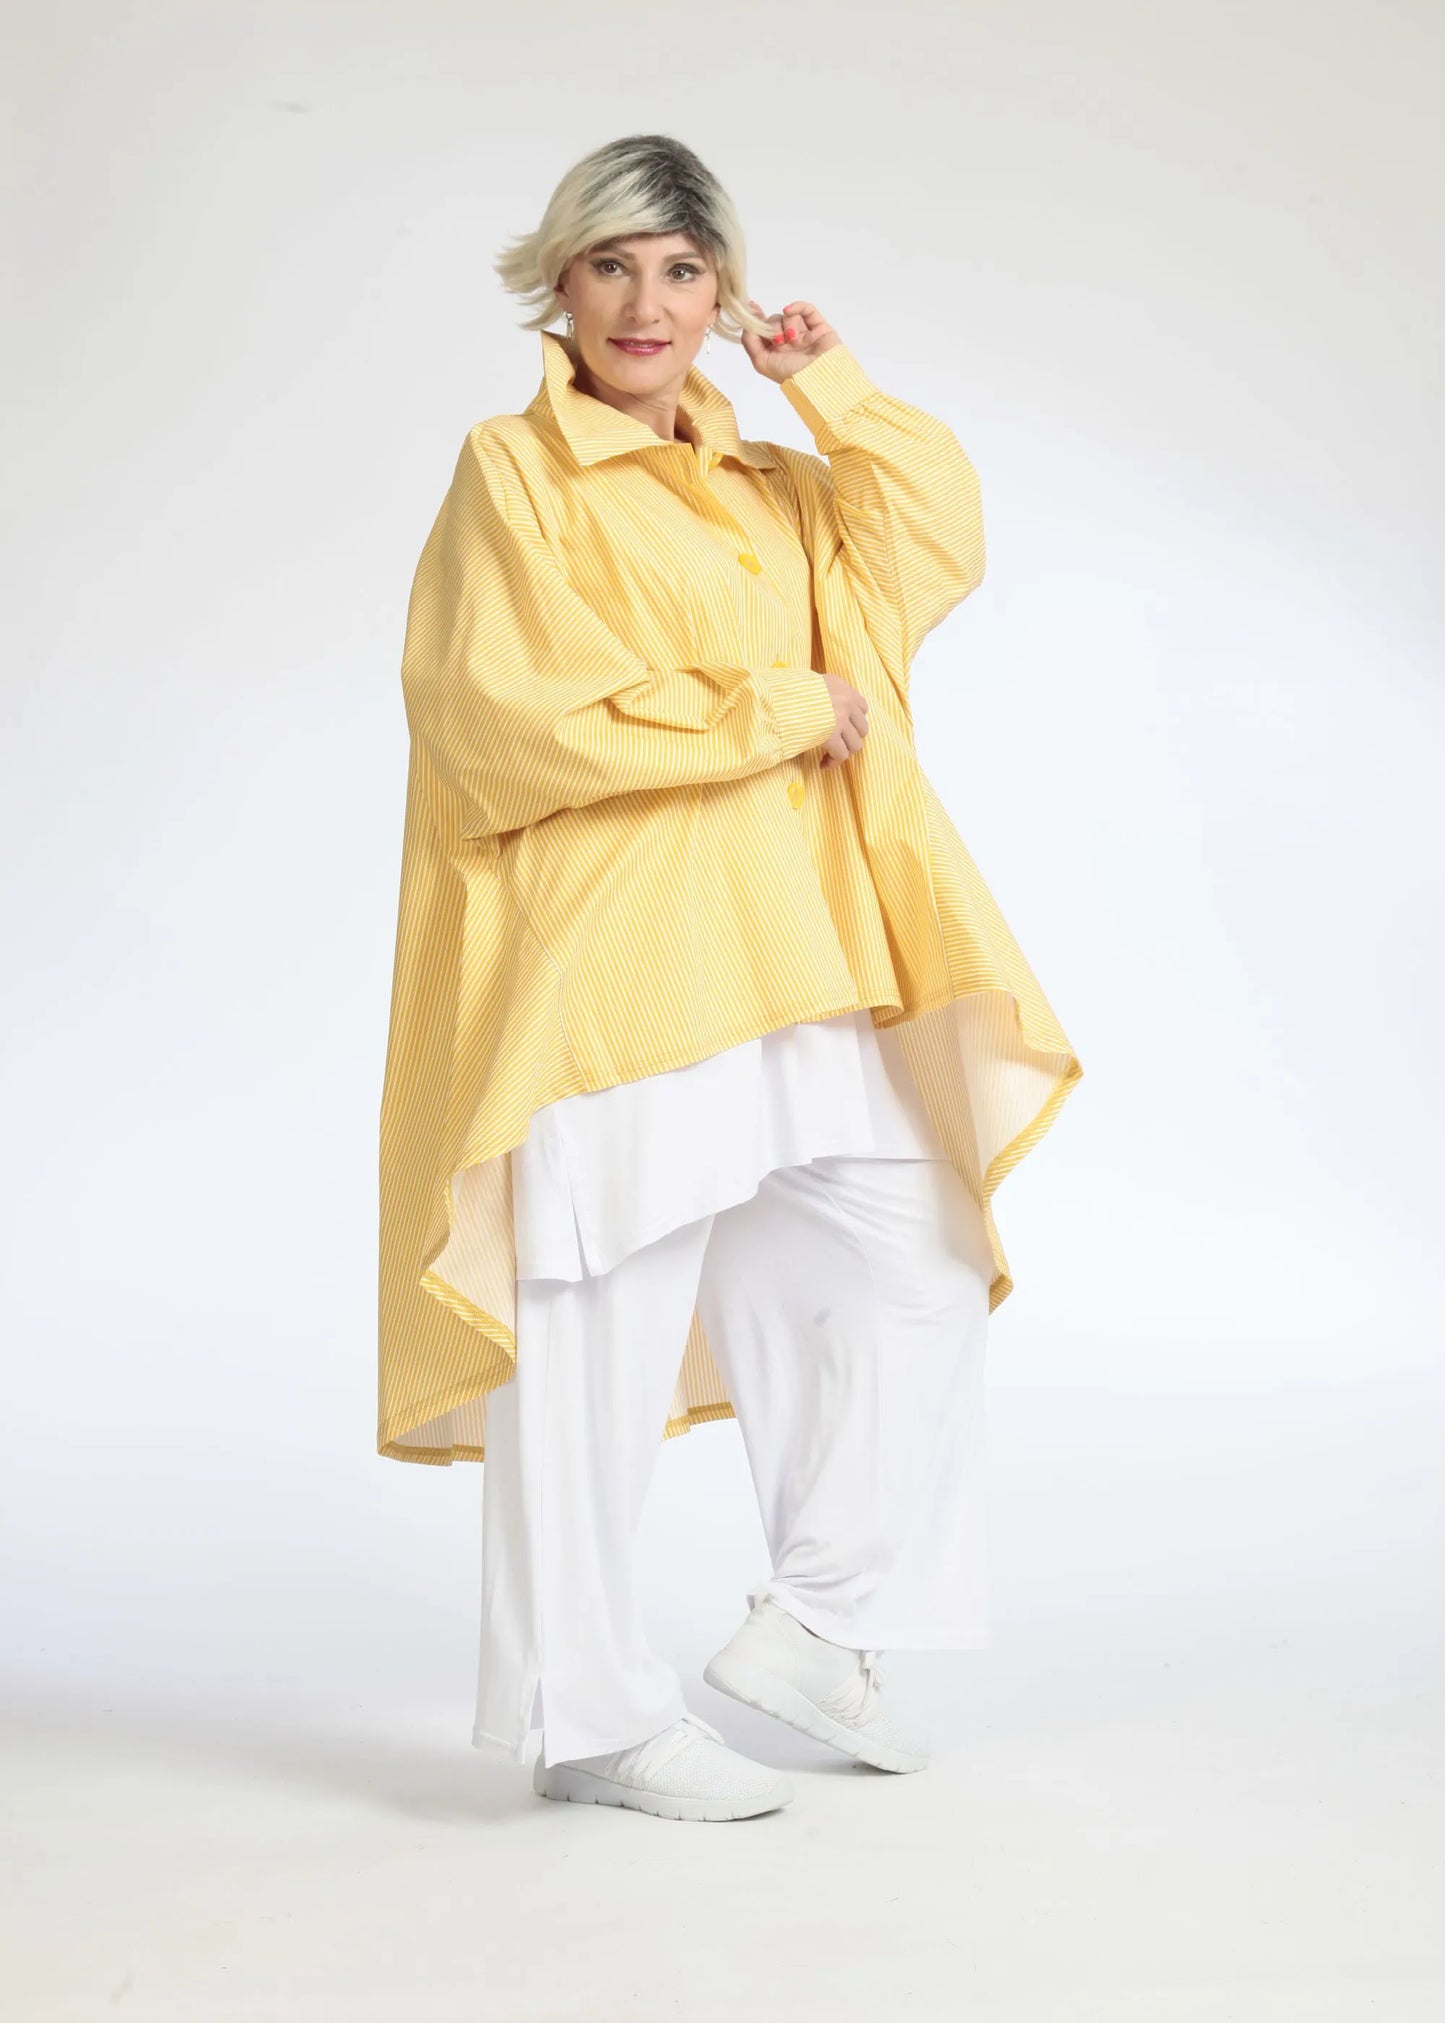 Sommer Bluse in Vokuhila Form aus glatter Popeline Qualität, Verena in Gelb-Weiß